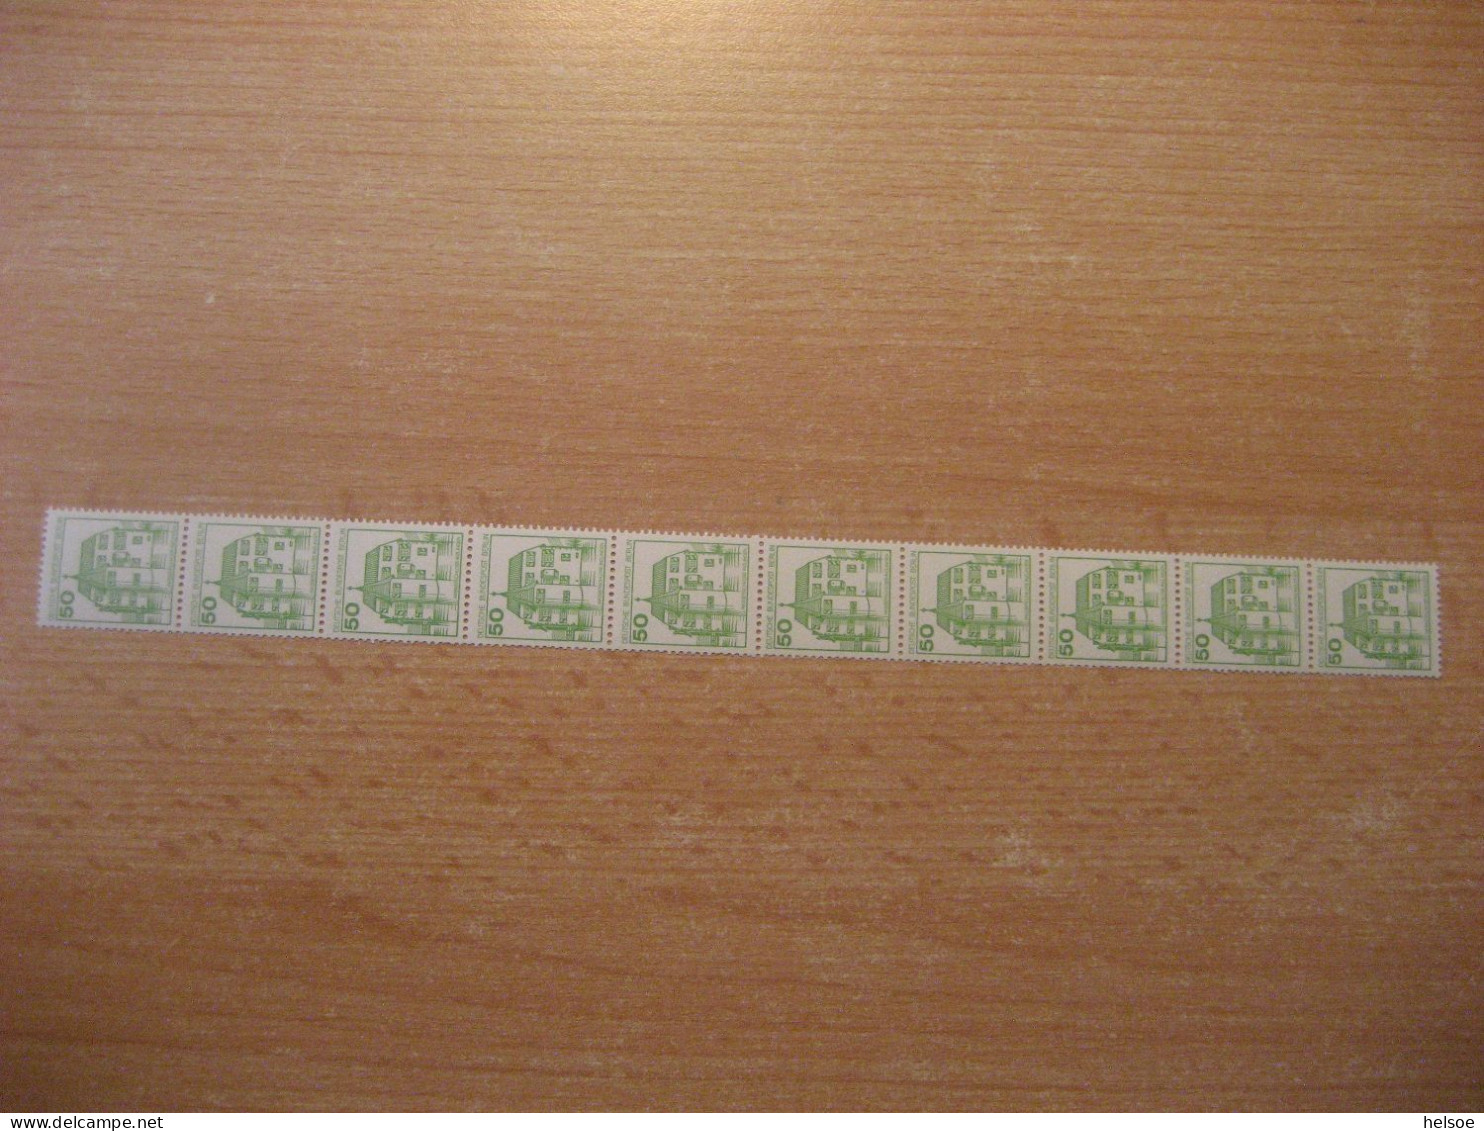 Deutschland Westberlin 1980- Rollenmarke 50 Pf. Rücks. Zählnummer, Mi. 537 ** Ungebraucht - Roulettes